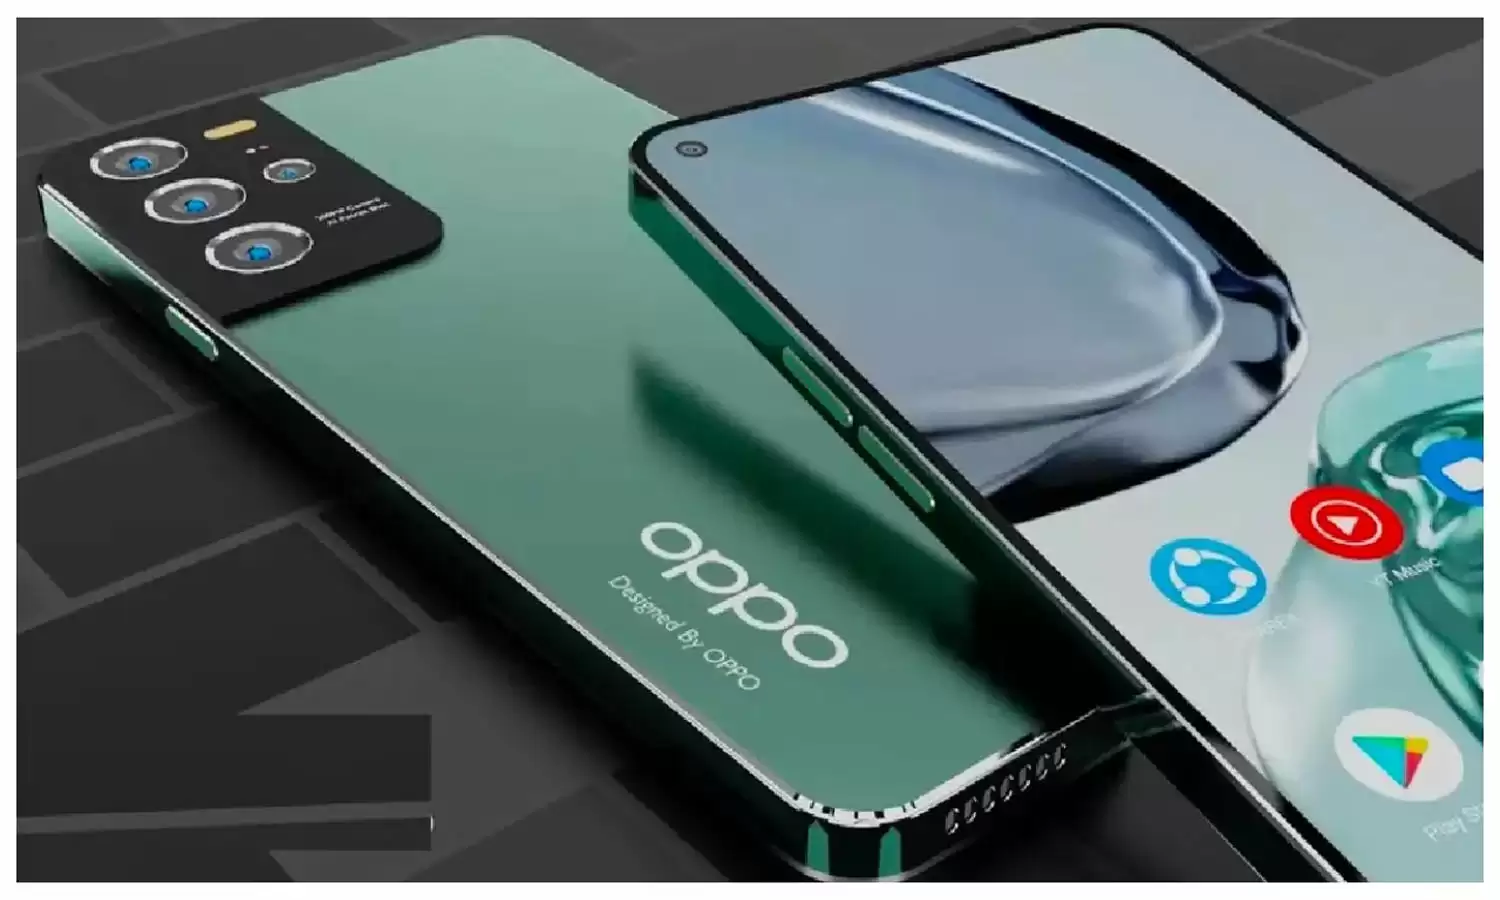 OPPO अपने कम कीमत वाले स्मार्टफोन को पेश करने वाला है, जिसका नाम Oppo A38 है. Appuals की एक नई रिपोर्ट से Oppo A38 के रेंडर, स्पेसिफिकेशन्स और कीमत का खुलासा हो चुका है. आइए जानते हैं Oppo A38 के बारे में डिटेल में...